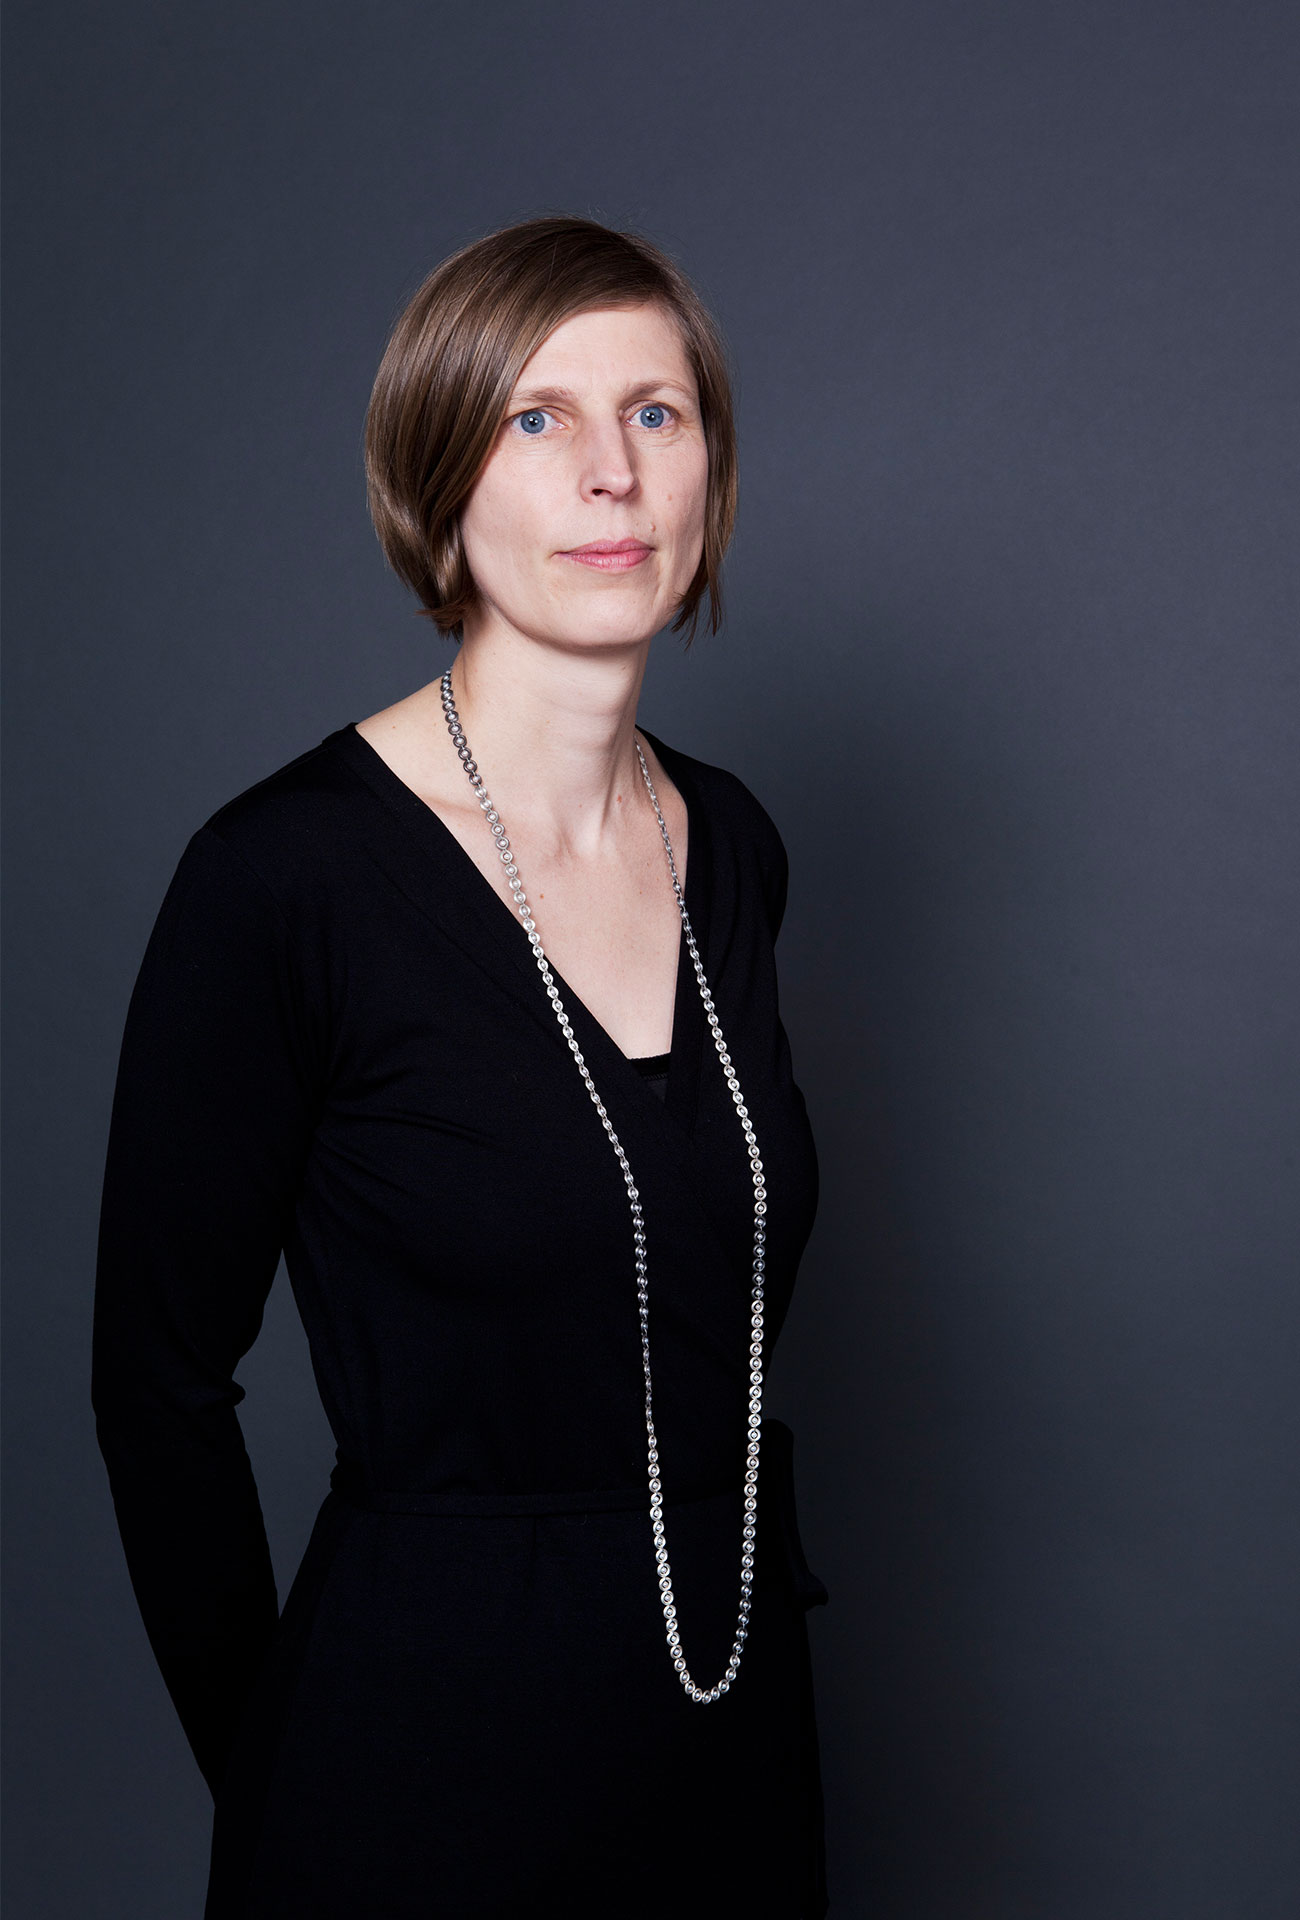 Stefanie Prießnitz with necklace